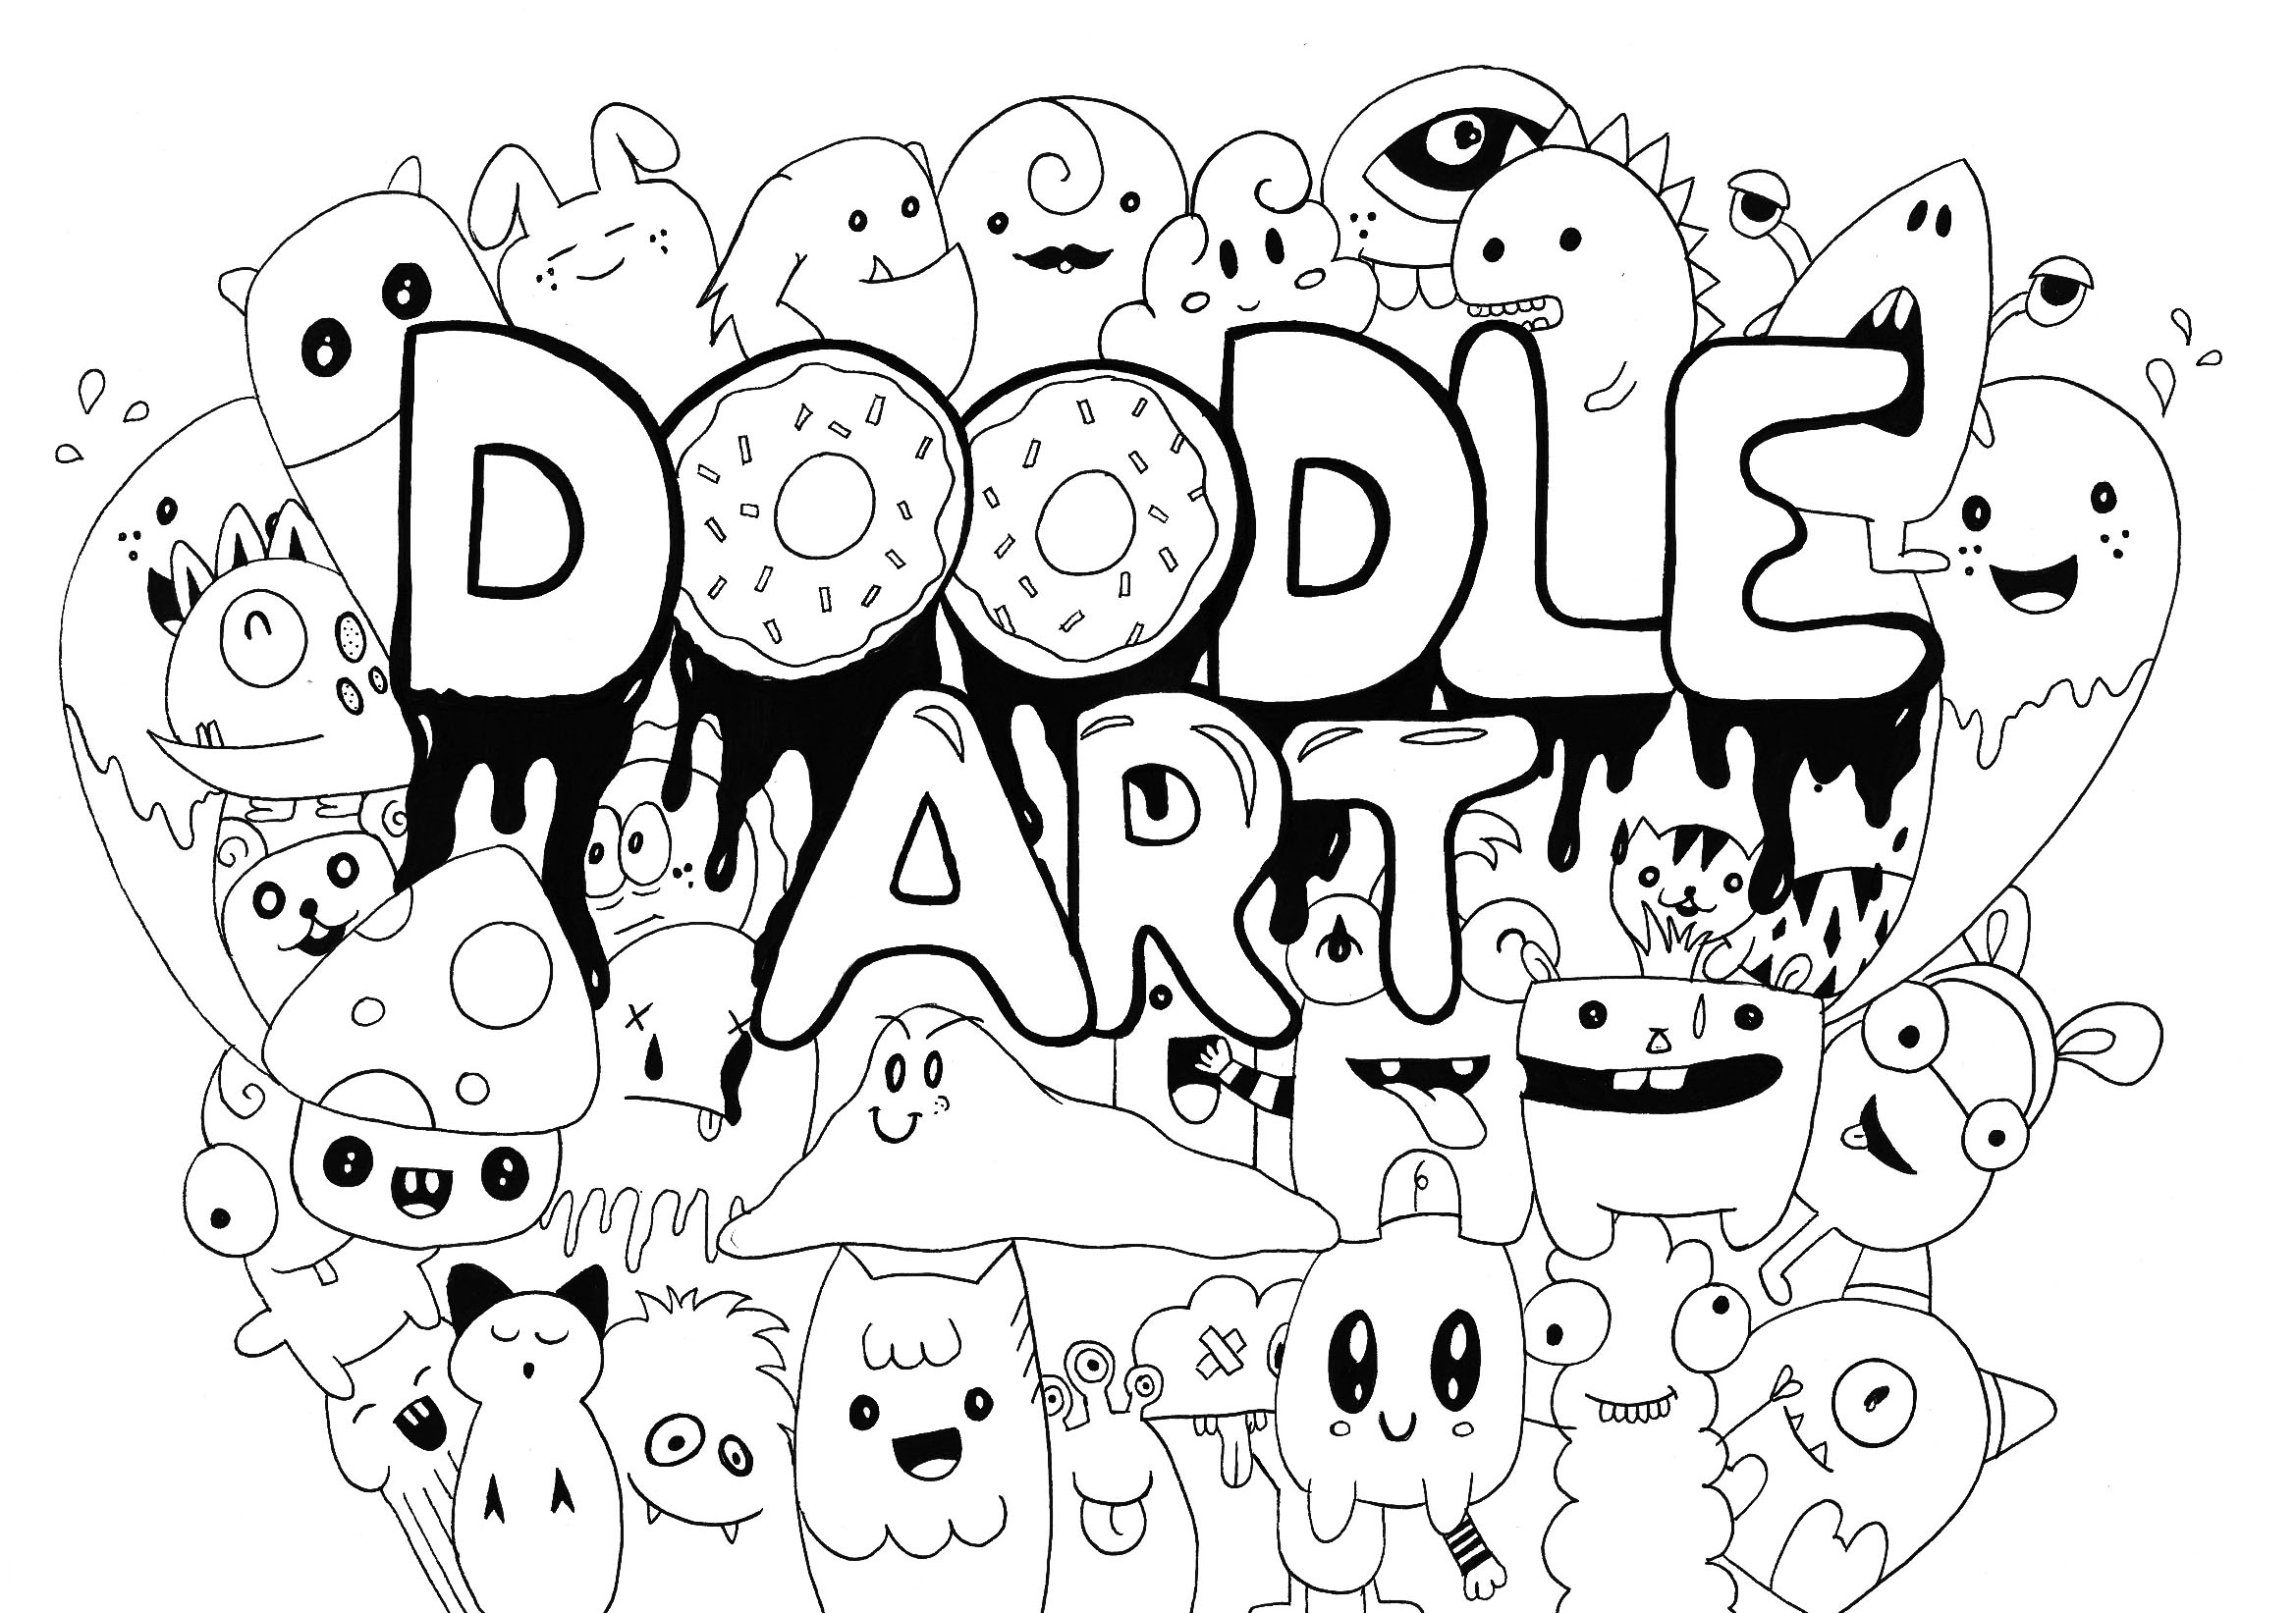 Dibujos para colorear gratis de Doodle Art para imprimir y colorear, para niños